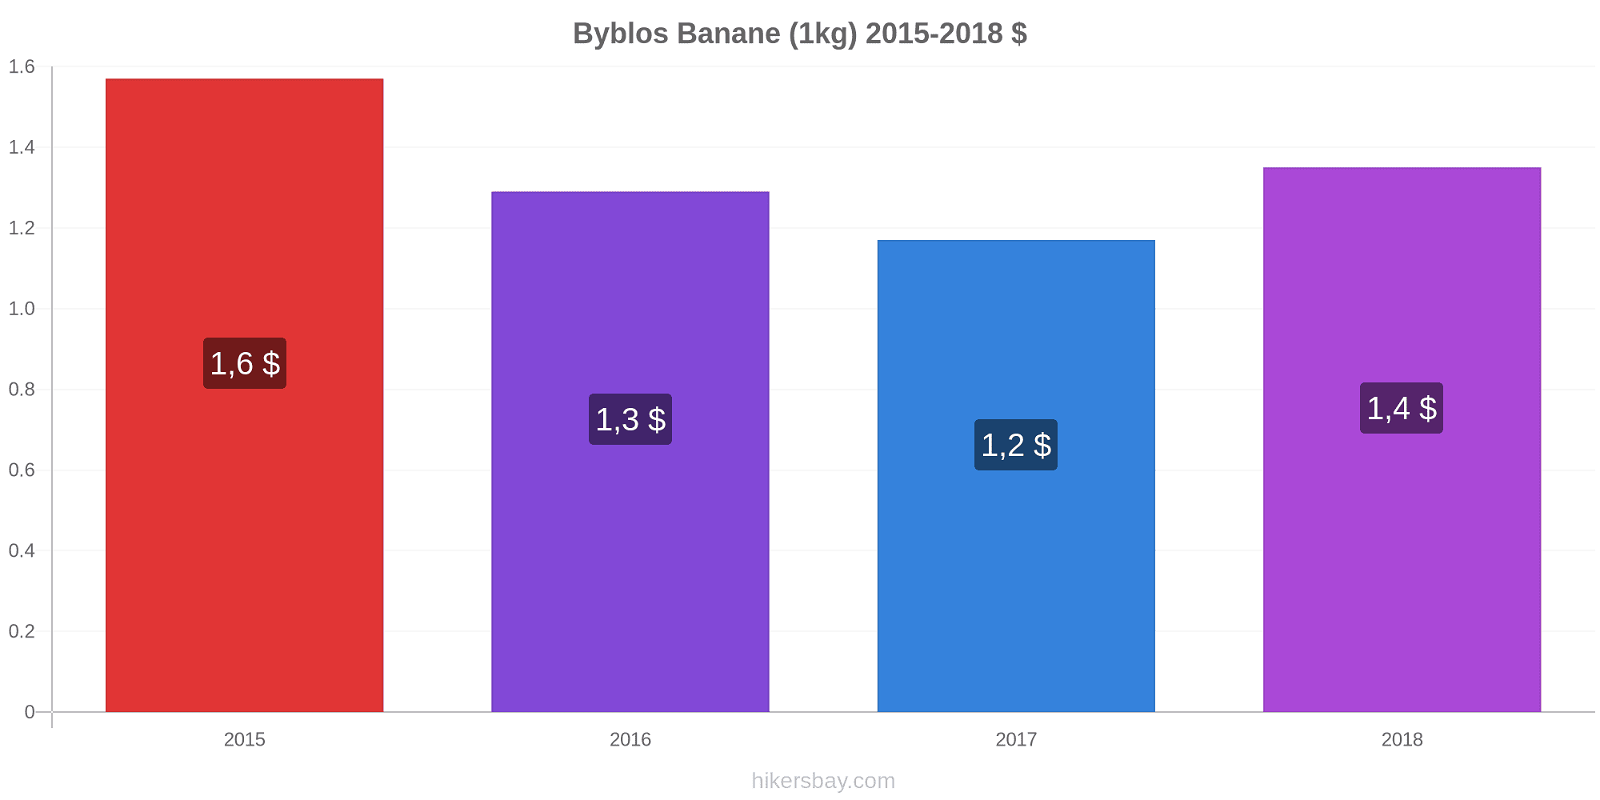 Byblos Preisänderungen Banane (1kg) hikersbay.com